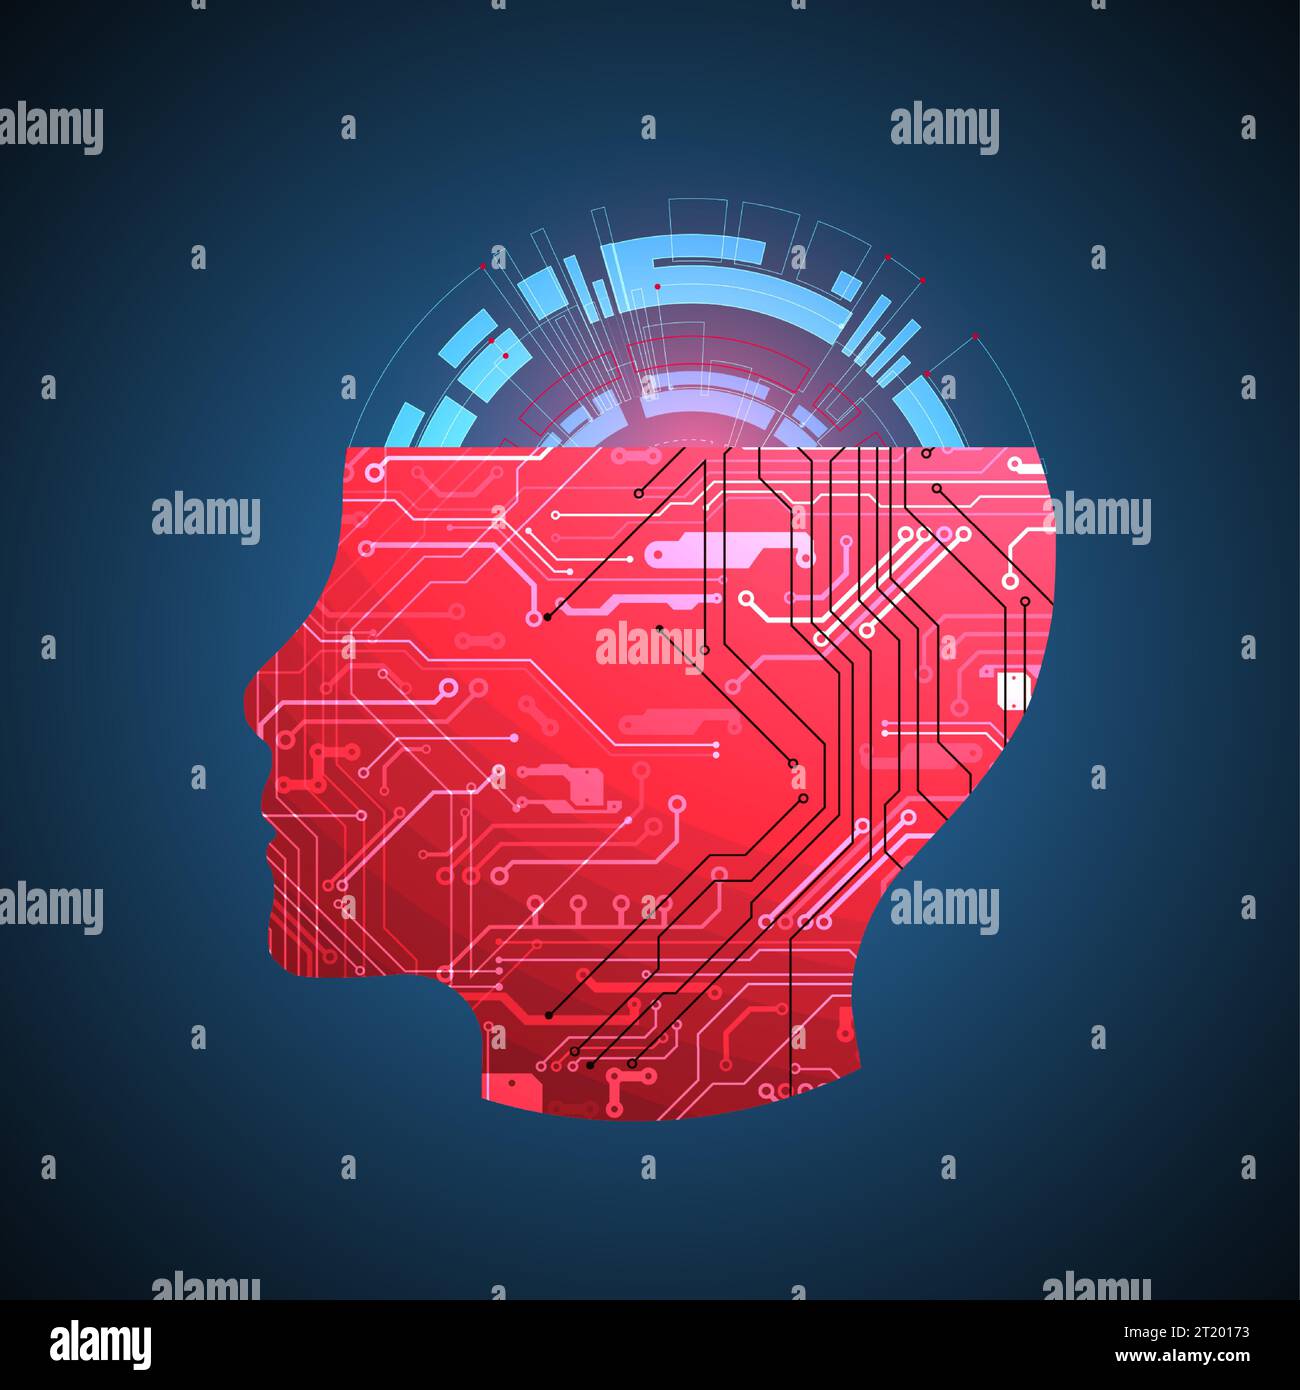 Abstrakter Hintergrund zum Thema künstliche Intelligenz. Kopfform mit technologischen Elementen innerhalb der Kontur. Stock Vektor